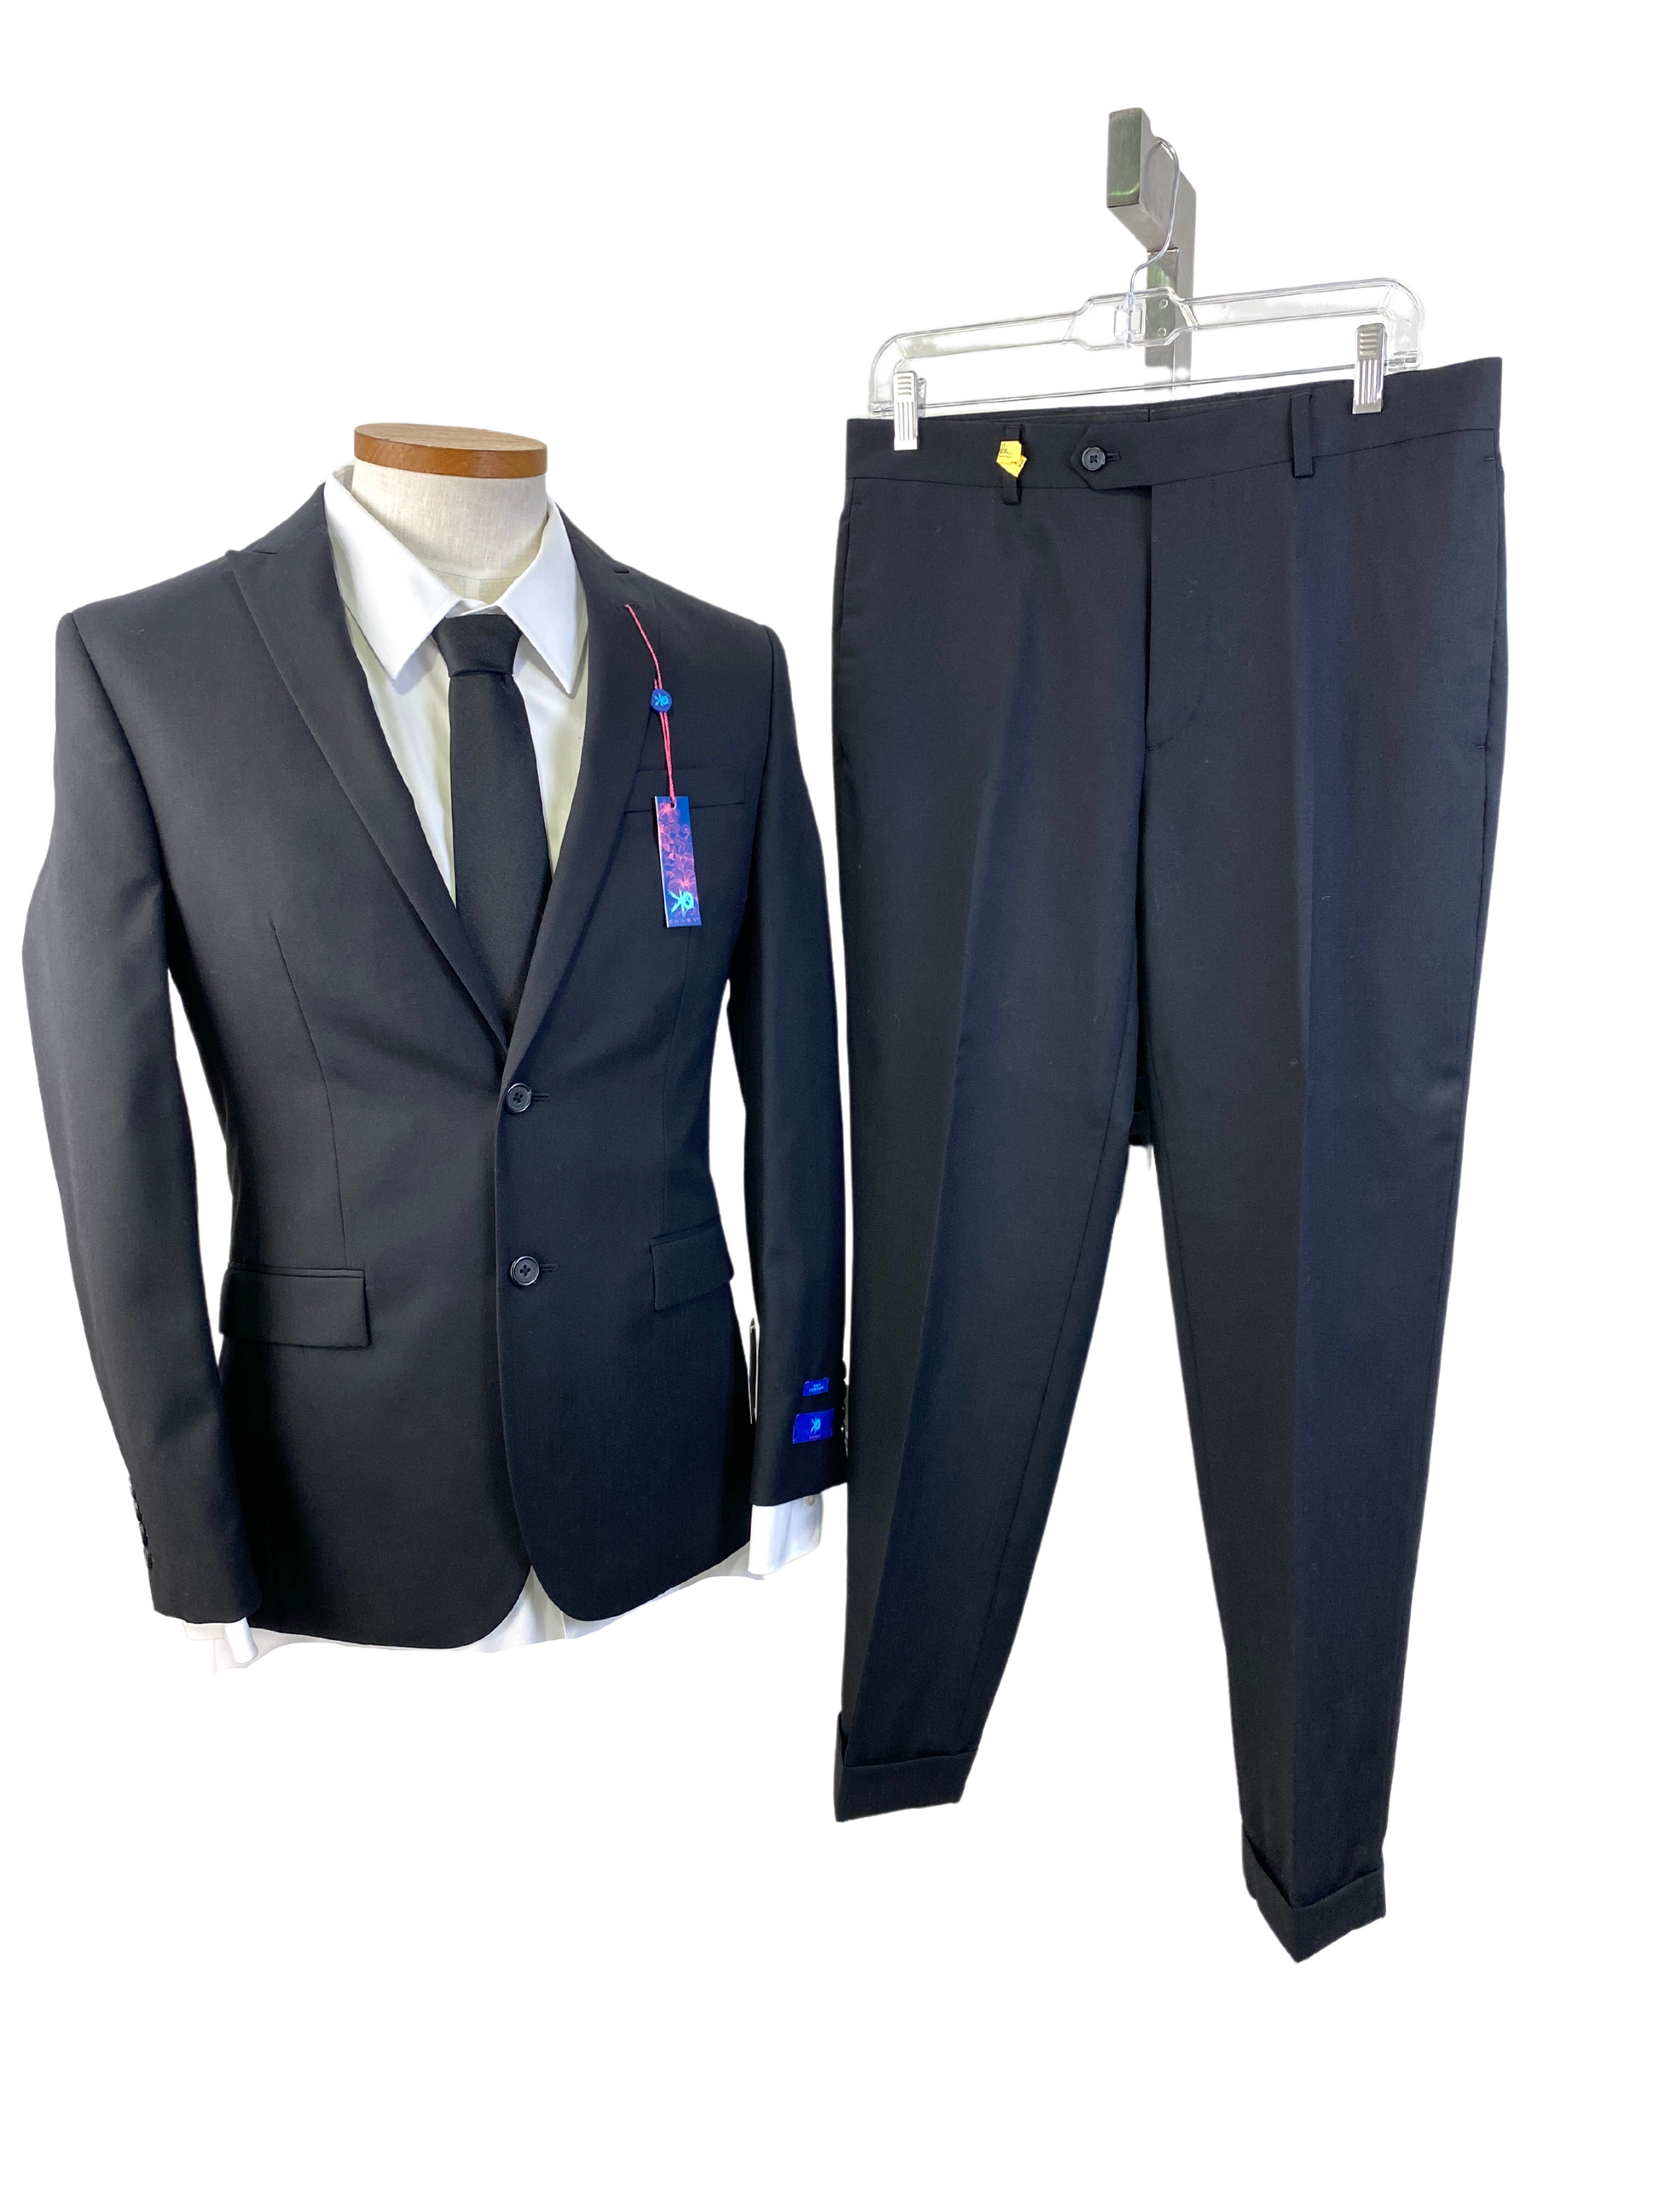 Yves Saint Laurent Vintage Silk Tie and Pocket Square - Yves Saint Laurent  MAN Silk Paisley Suit